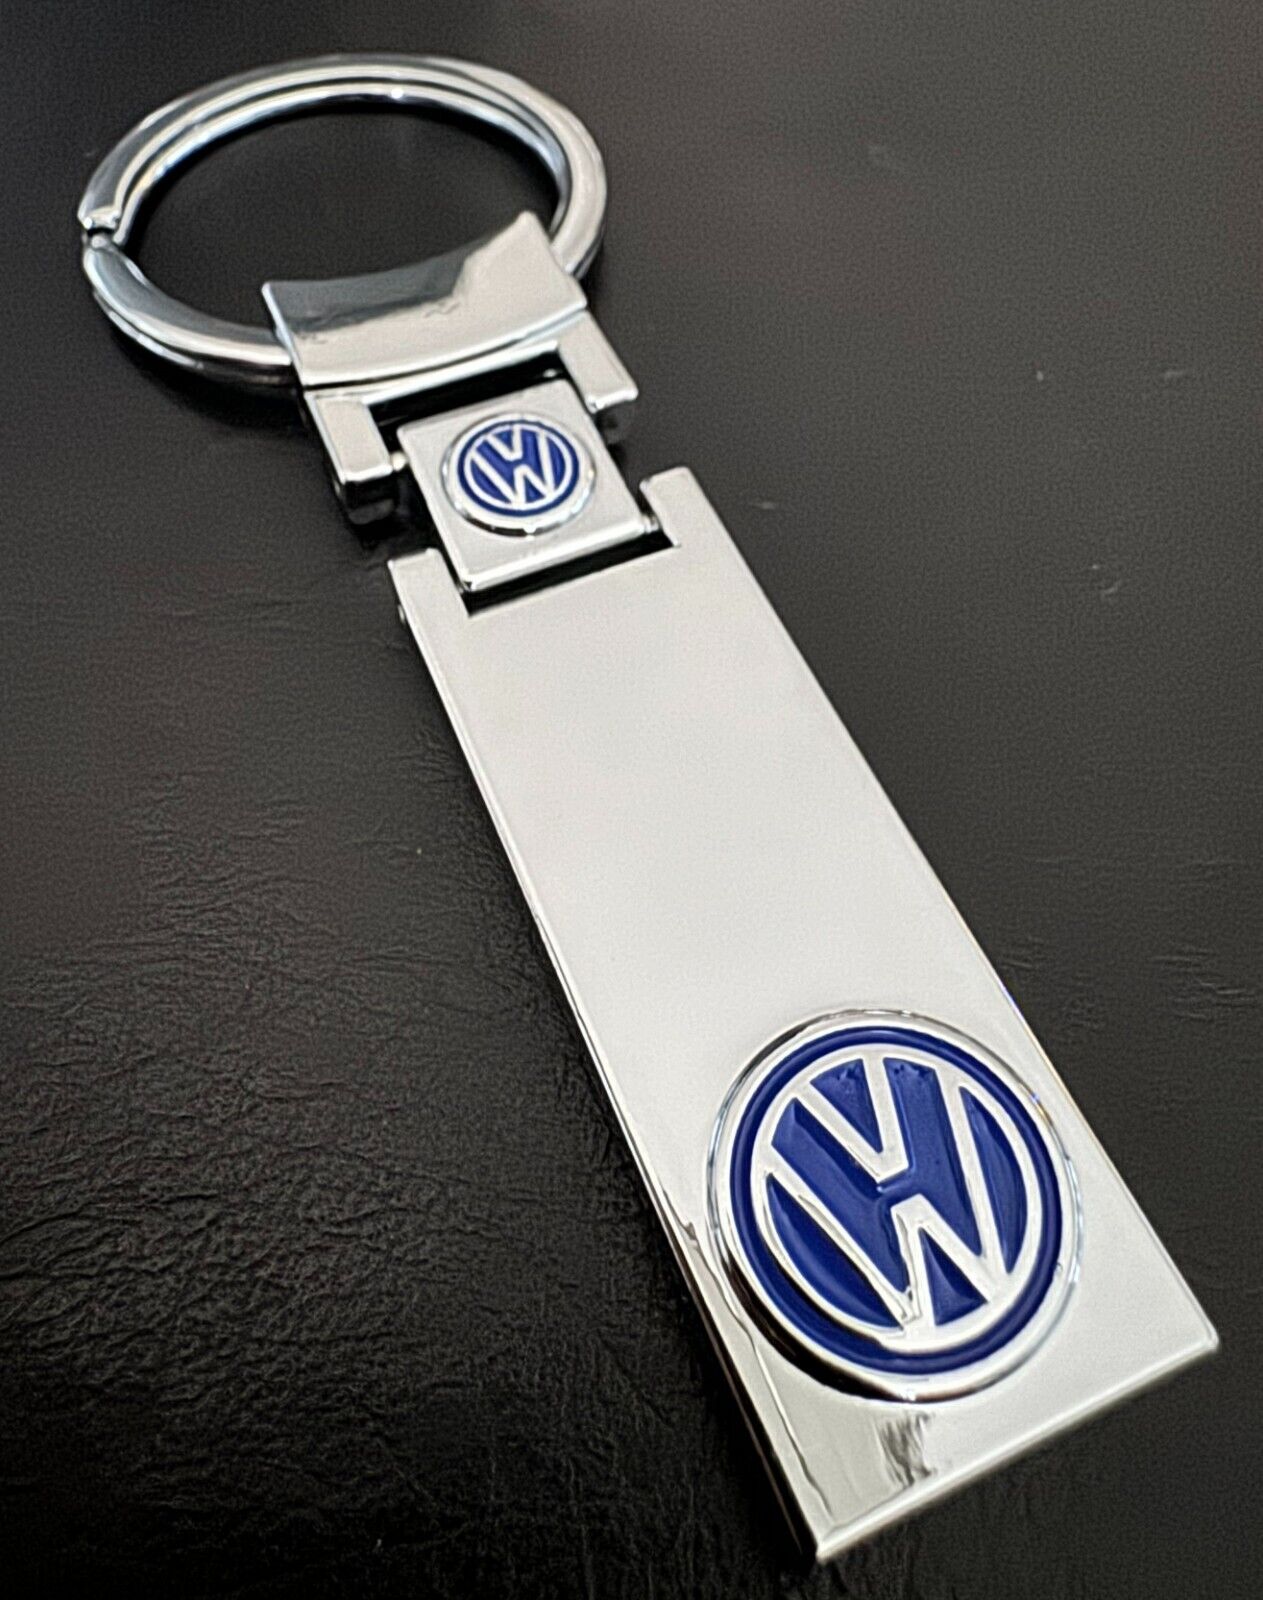 Nicest Elegant VW Volkswagen Keychain Online - Sleek Mirror Finish, BLUE Logo